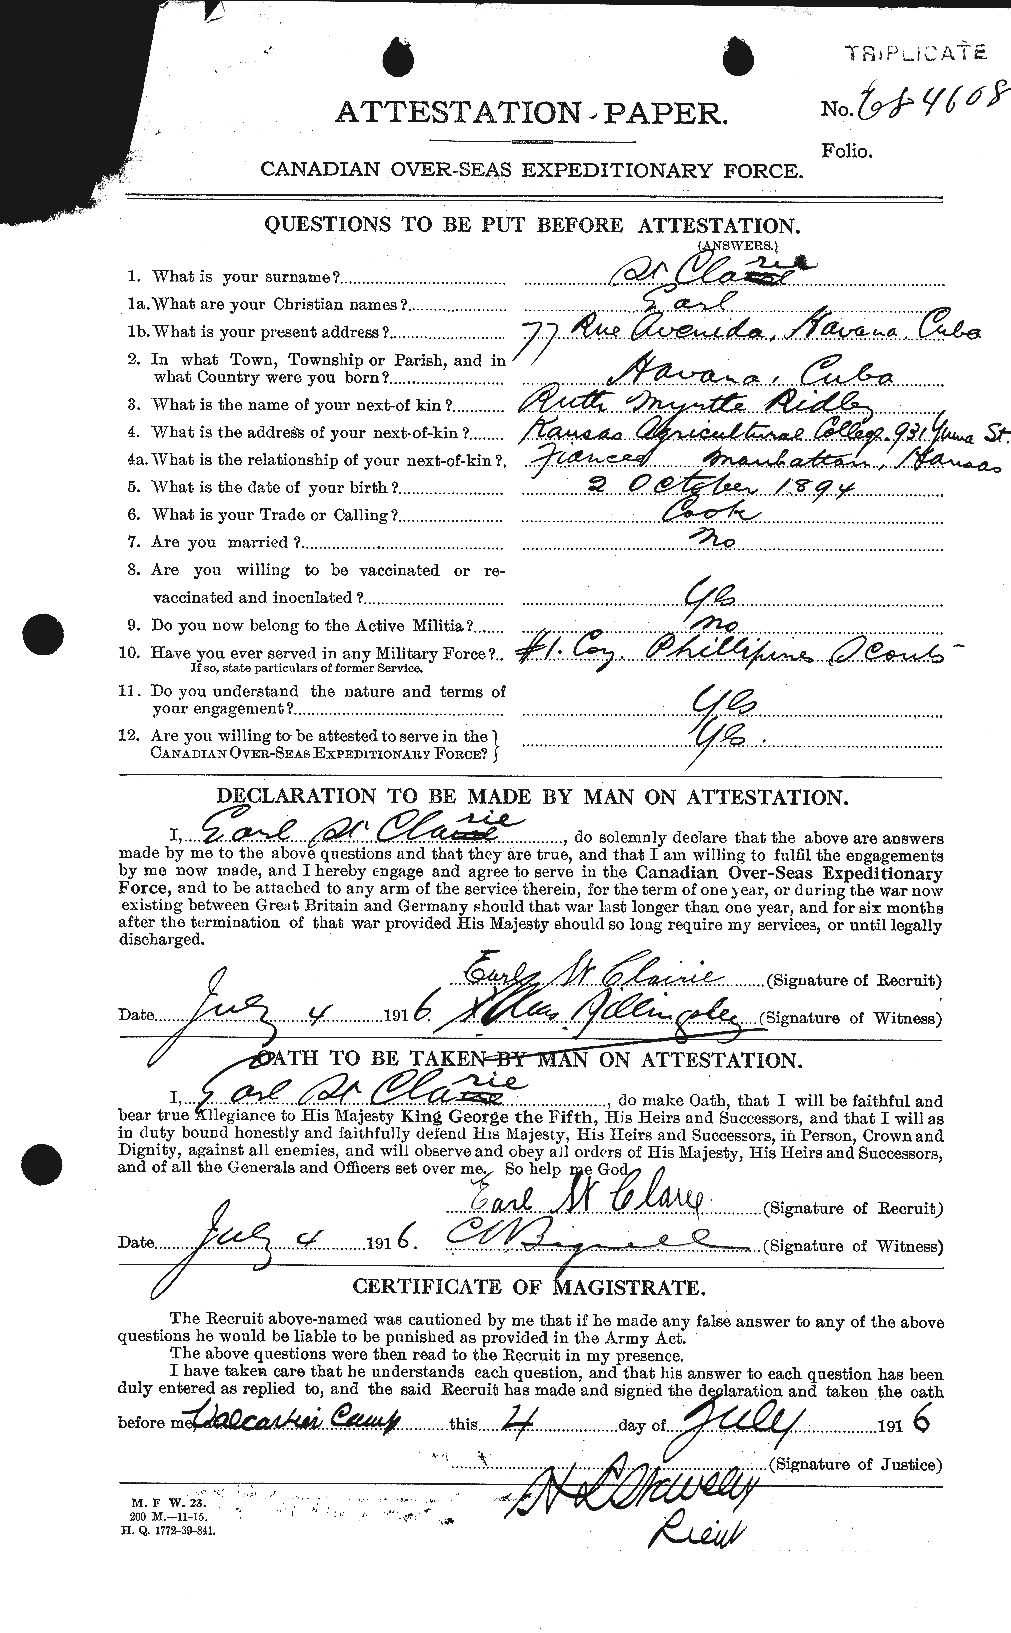 Dossiers du Personnel de la Première Guerre mondiale - CEC 076659a